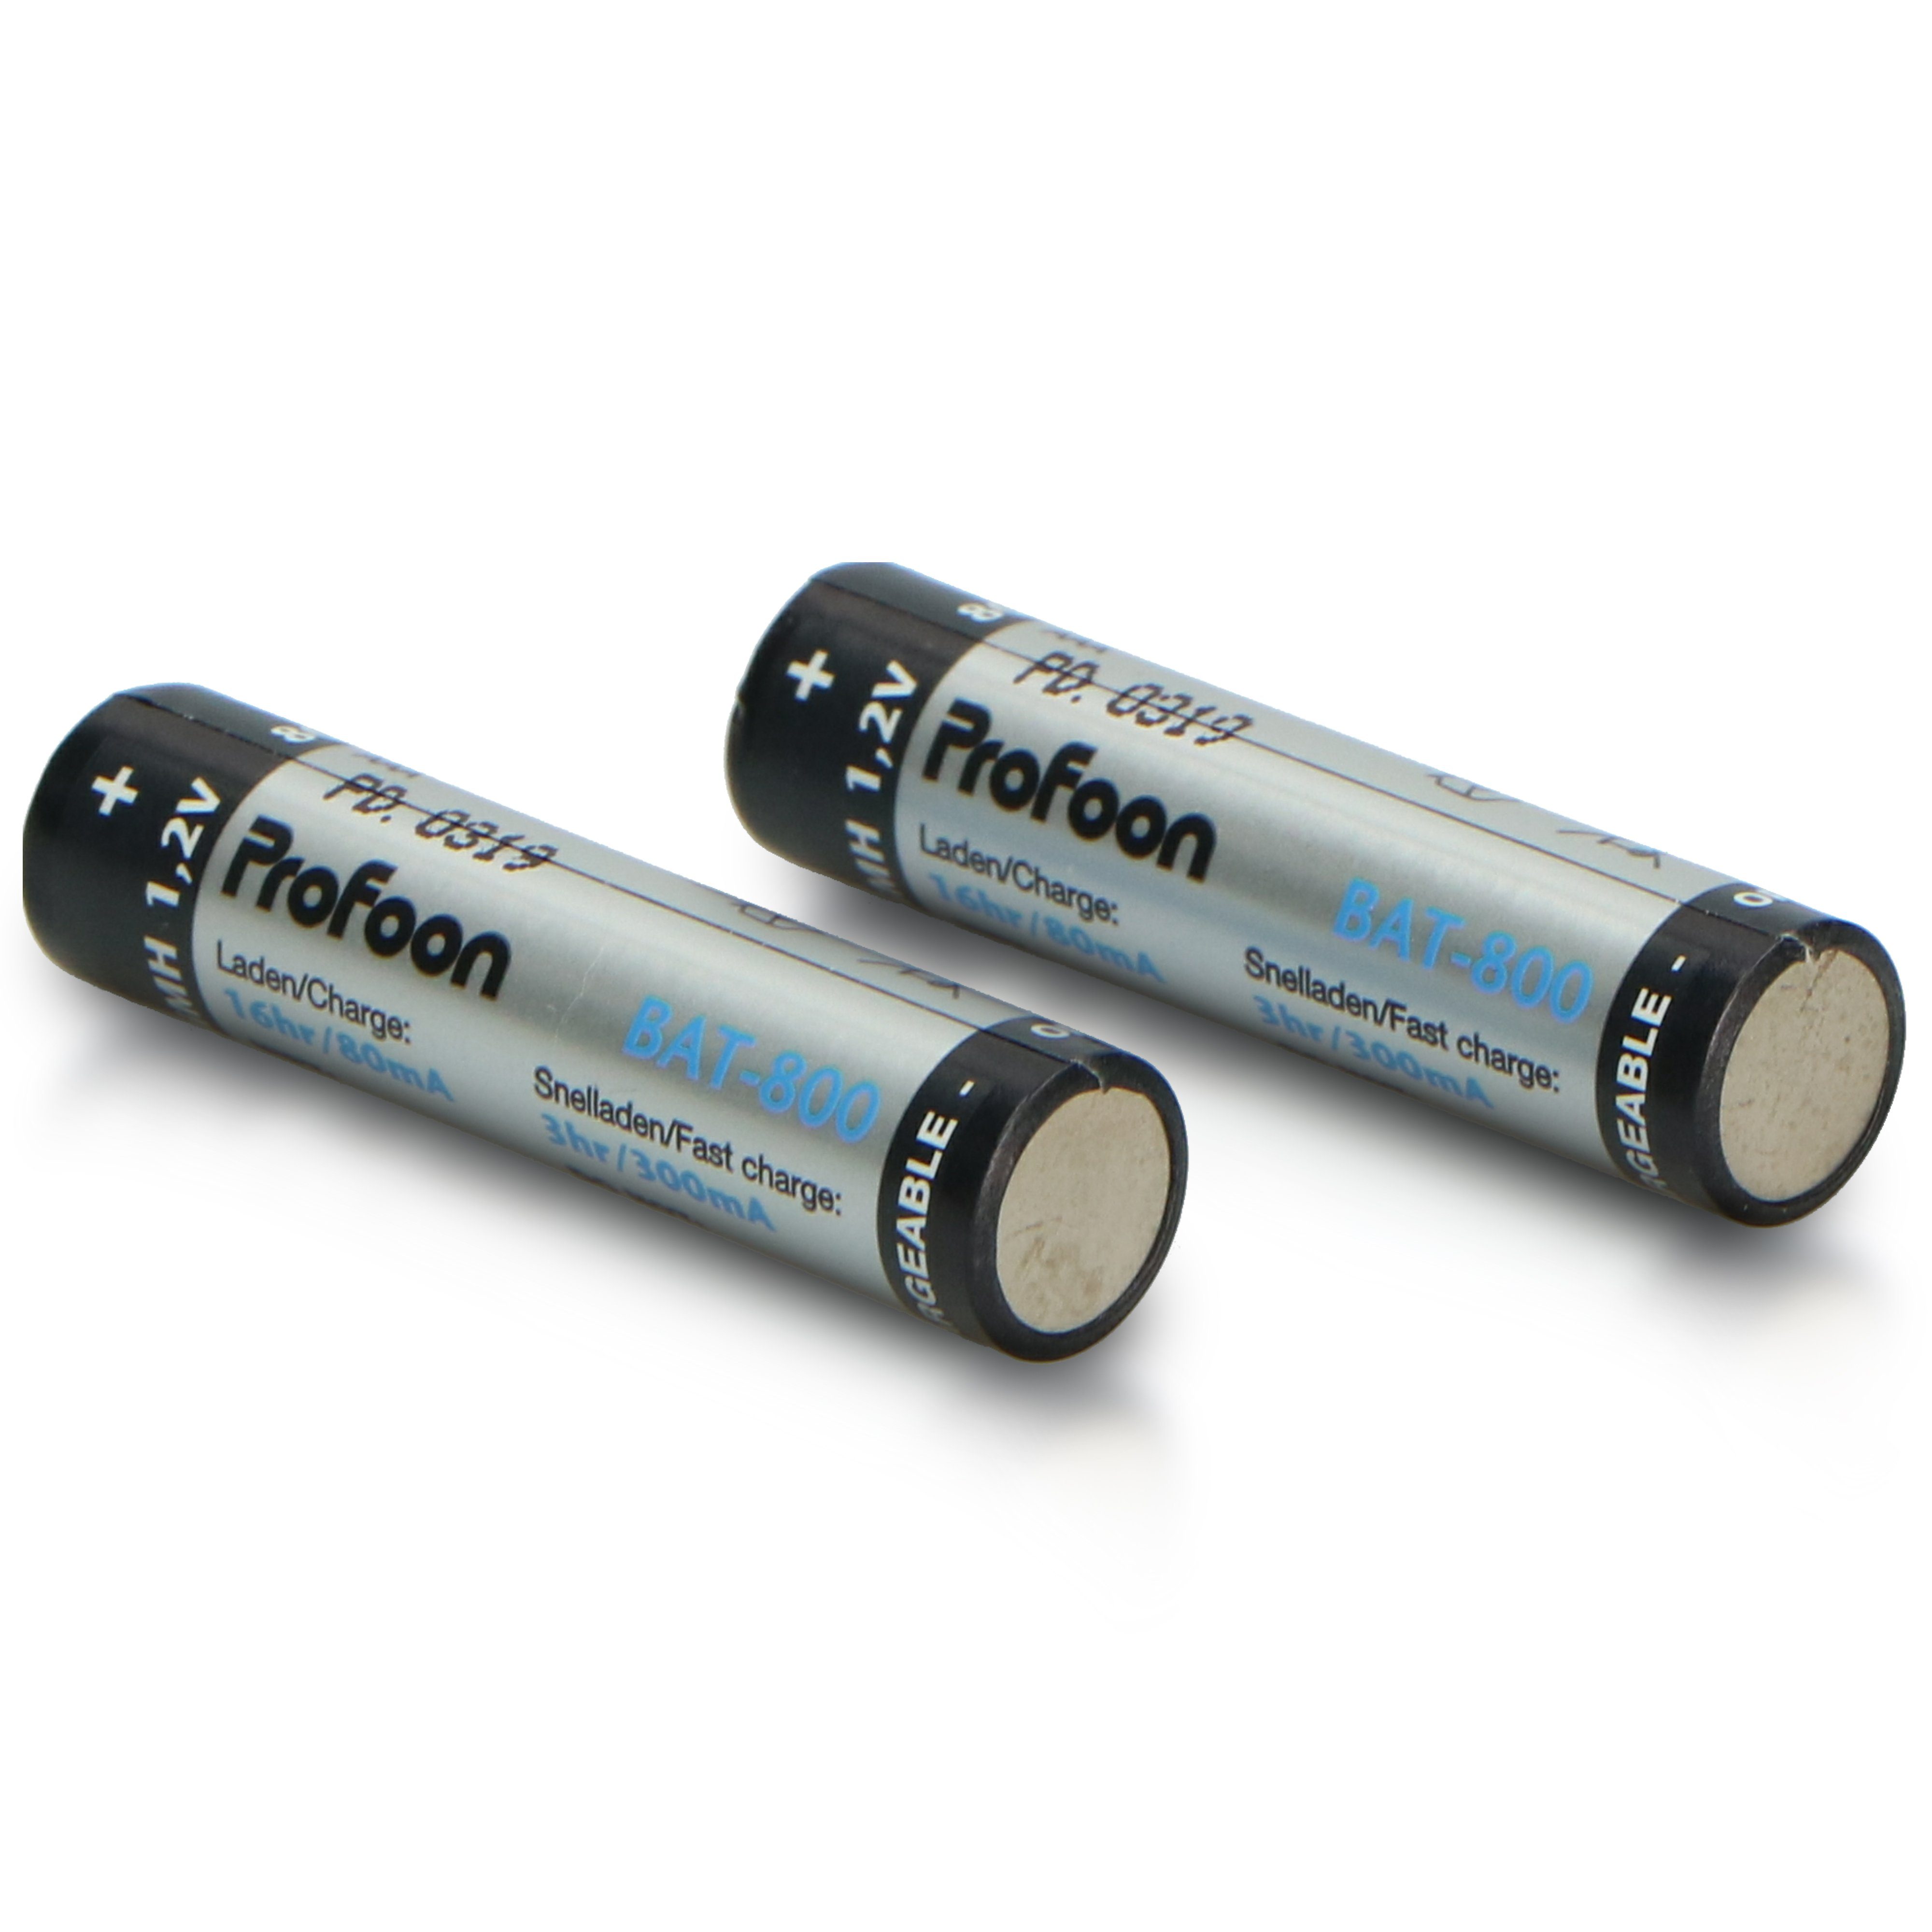 BAT-800 Batterie, St) Profoon (2